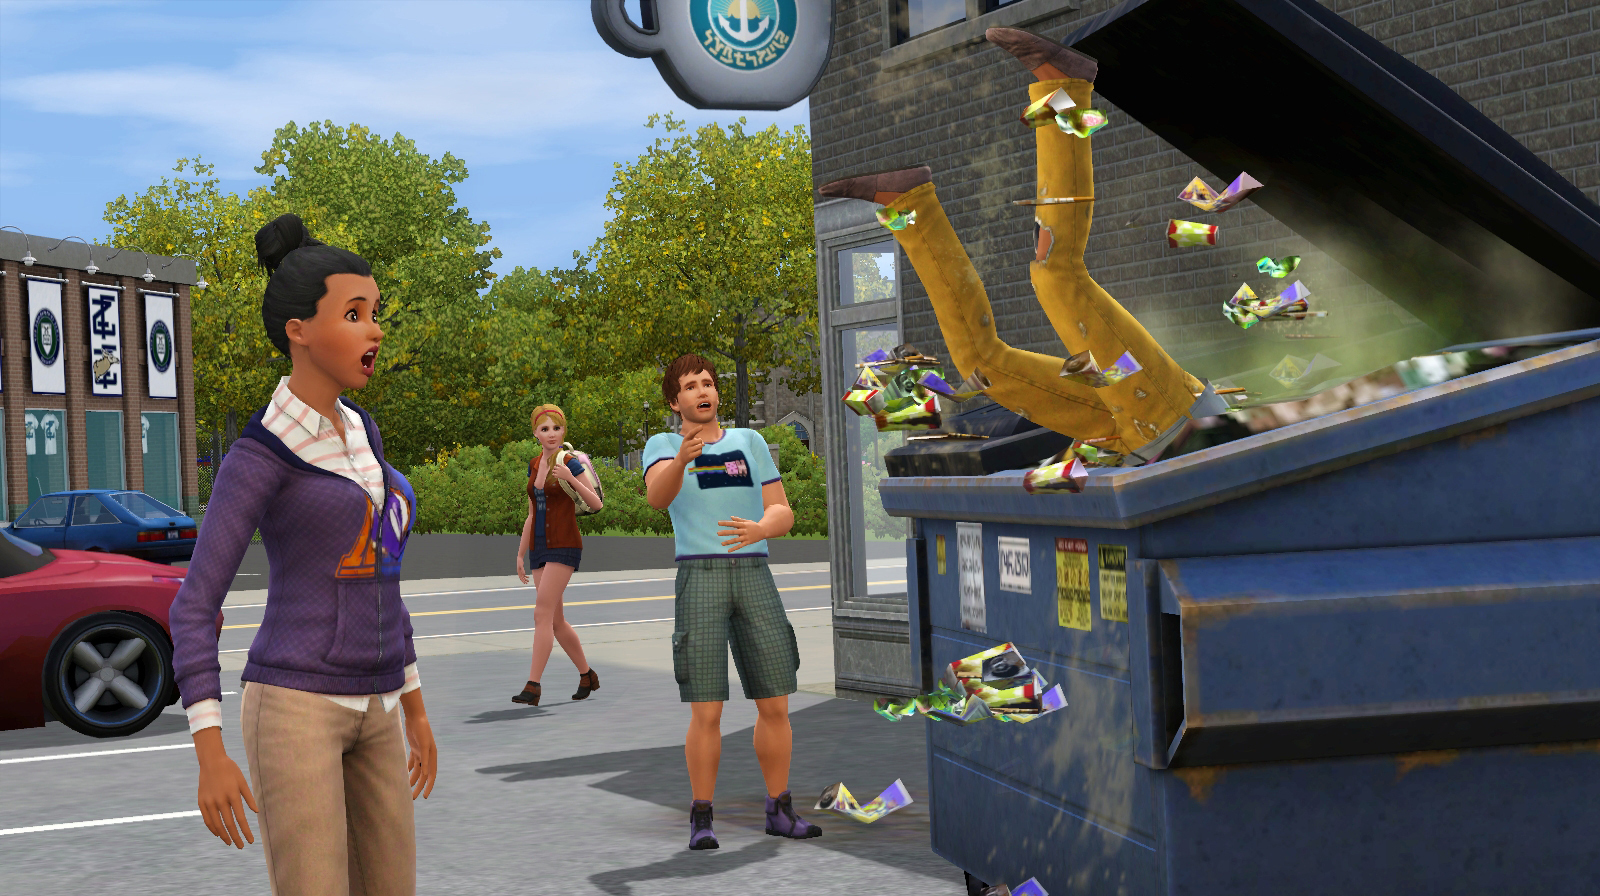 Скриншоты The Sims 3: University Life - картинки, арты, обои